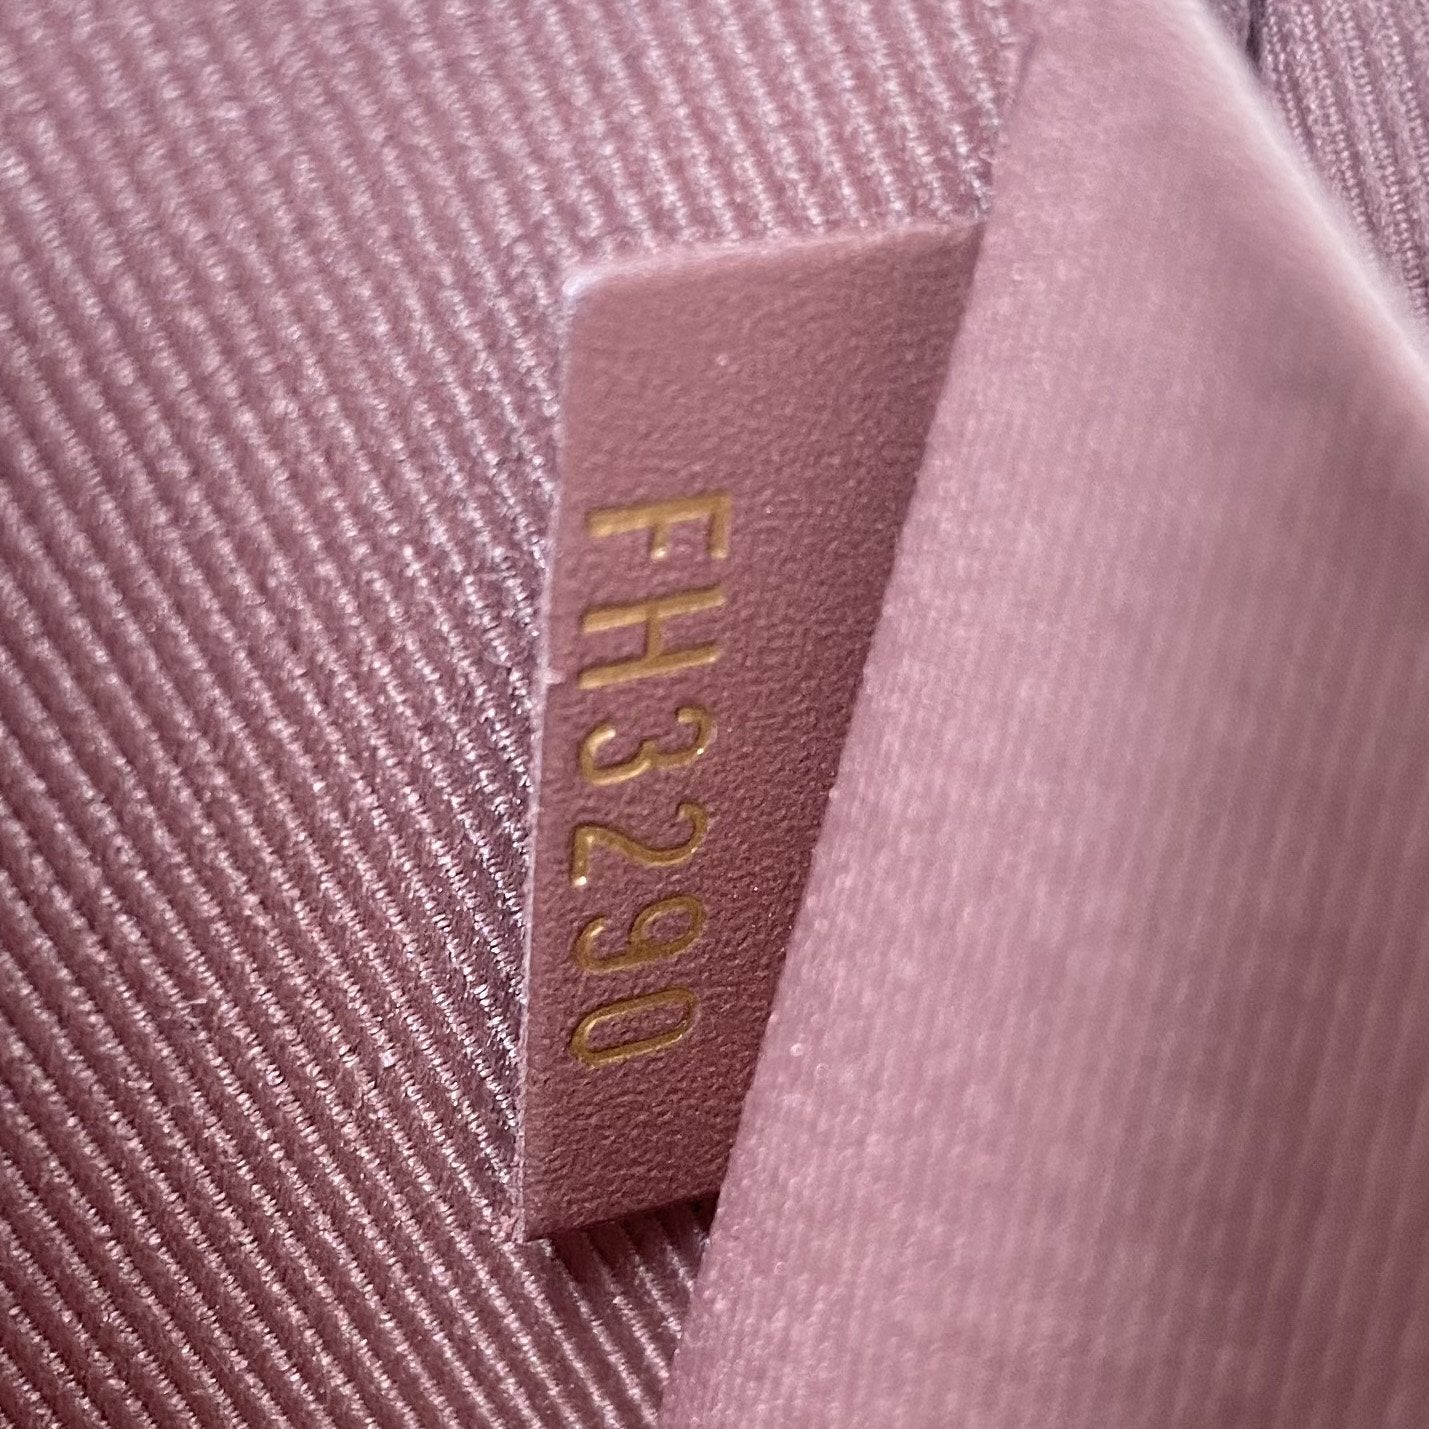 Louis Vuitton Monogram Vernis Pochette Felicie - Purple Shoulder